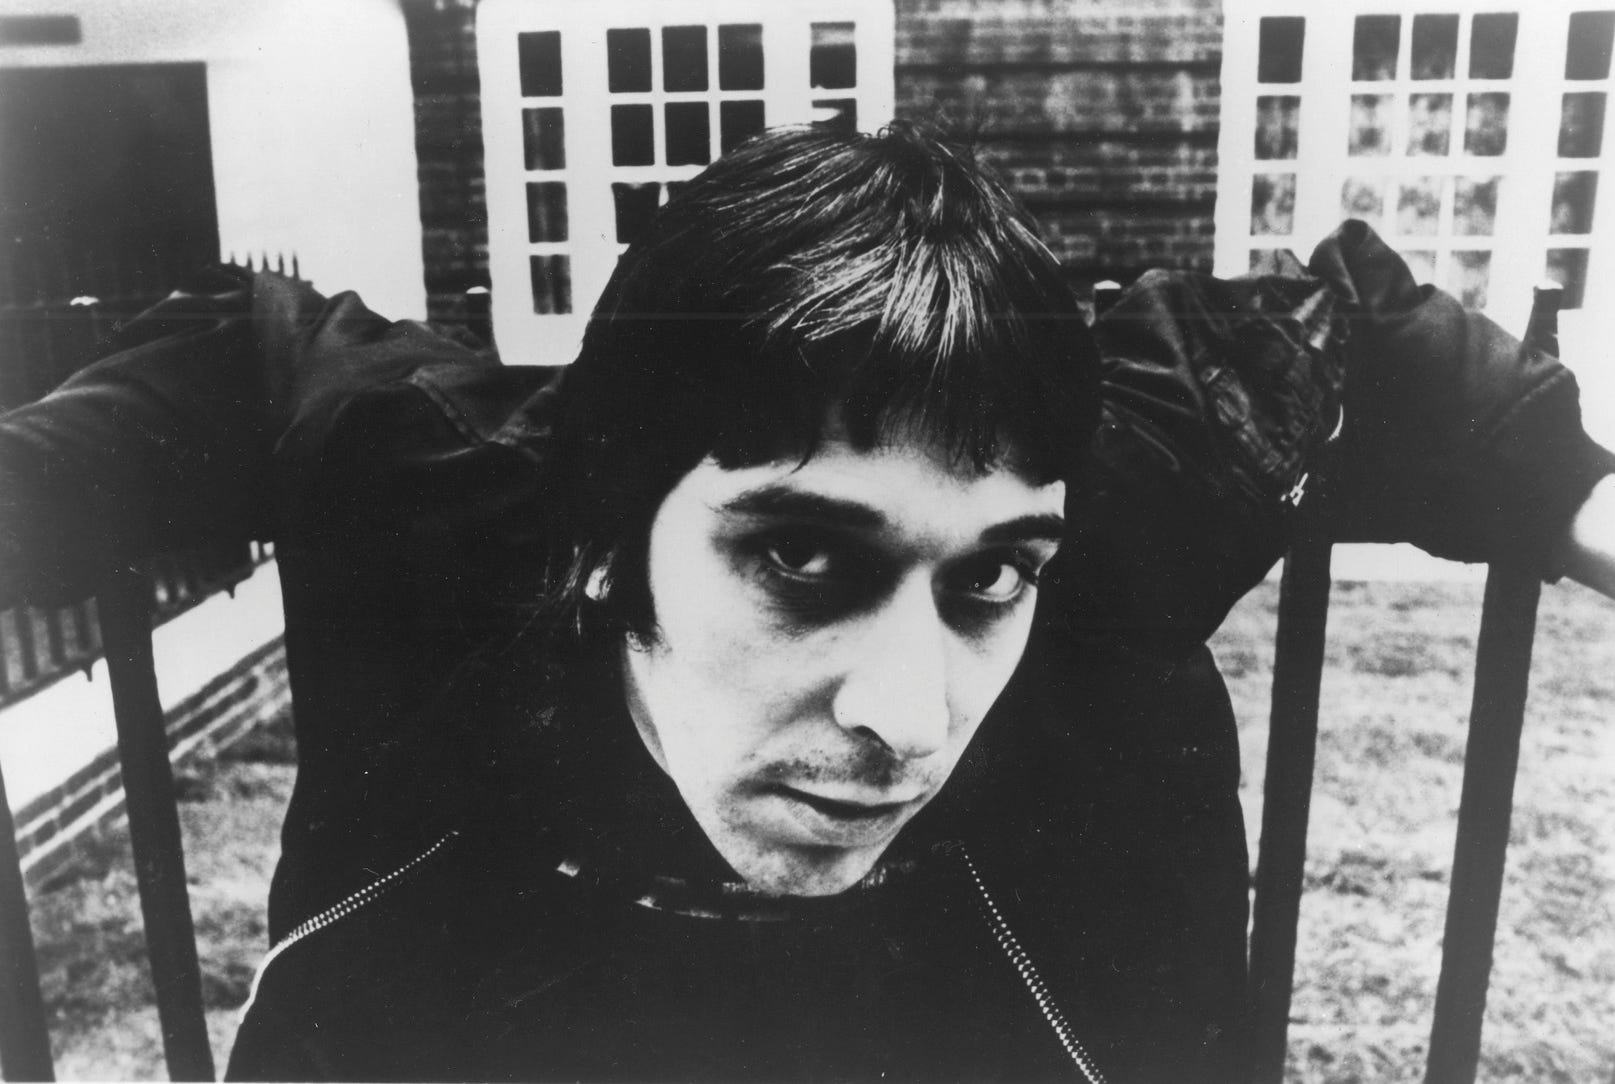 John Cale, Velvet Underground, Producer, & Biography